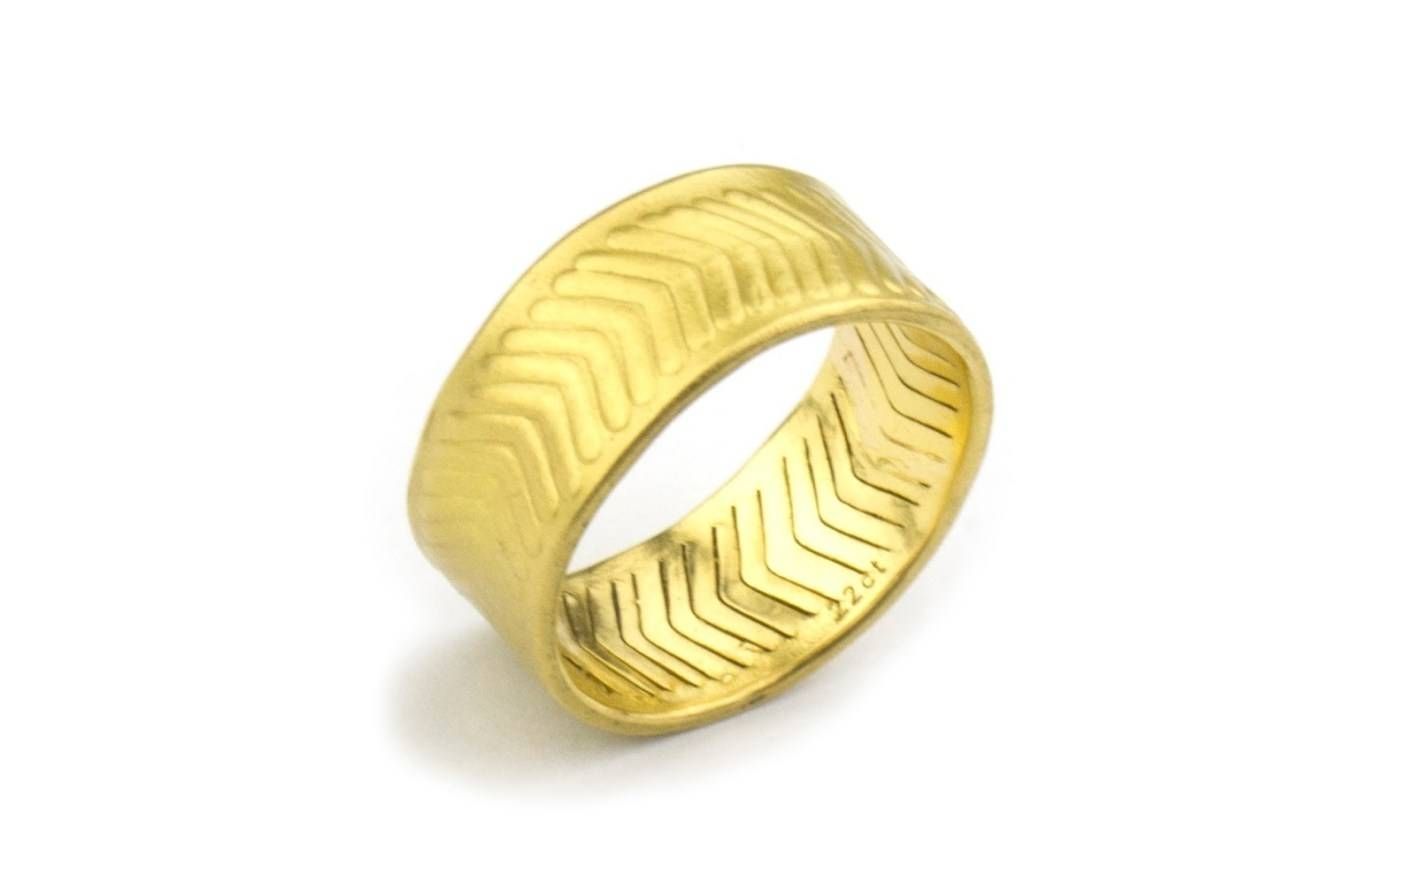 Wedding Rings : 22 Carat Gold Wedding Ring Glamorous 22 Carat Gold Intended For 22 Carat Gold Wedding Rings (View 9 of 15)